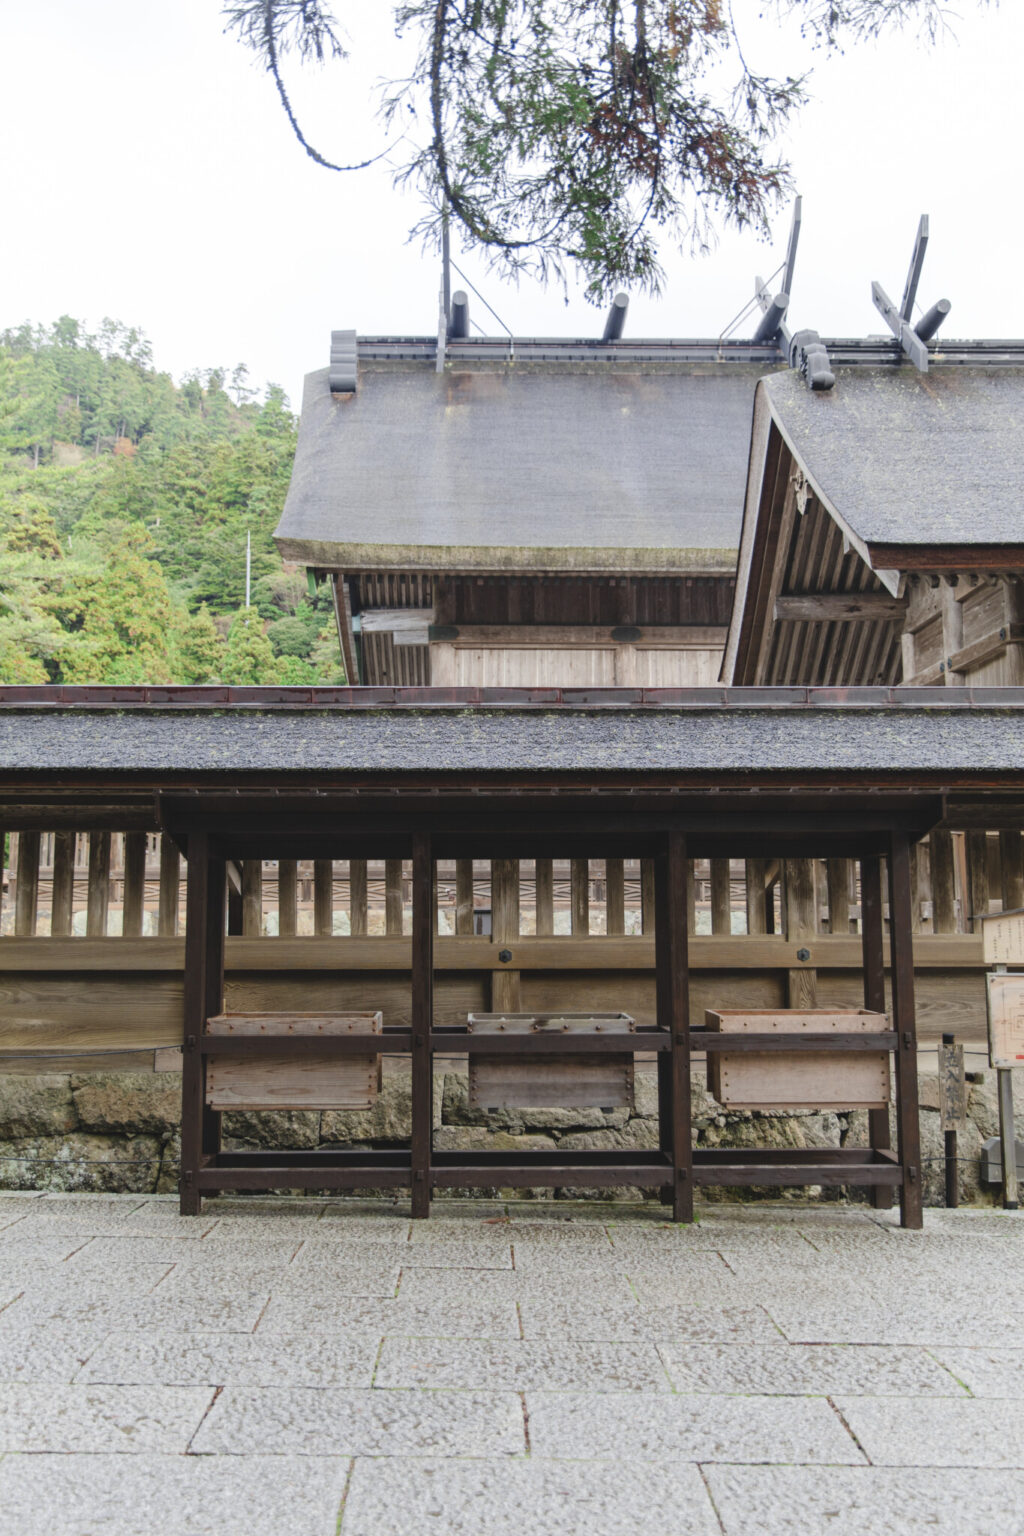 大社造りと呼ばれる日本最古の神社様式が圧巻の御本殿。60年に一度、檜皮葺屋根の葺替え等が行われて御遷宮を行う。平成の大遷宮で美しく蘇った御本殿は、破風（はふ・屋根の三角部分）や千木（ちぎ・屋根に交差して置かれた板木）にも力強さを感じる。